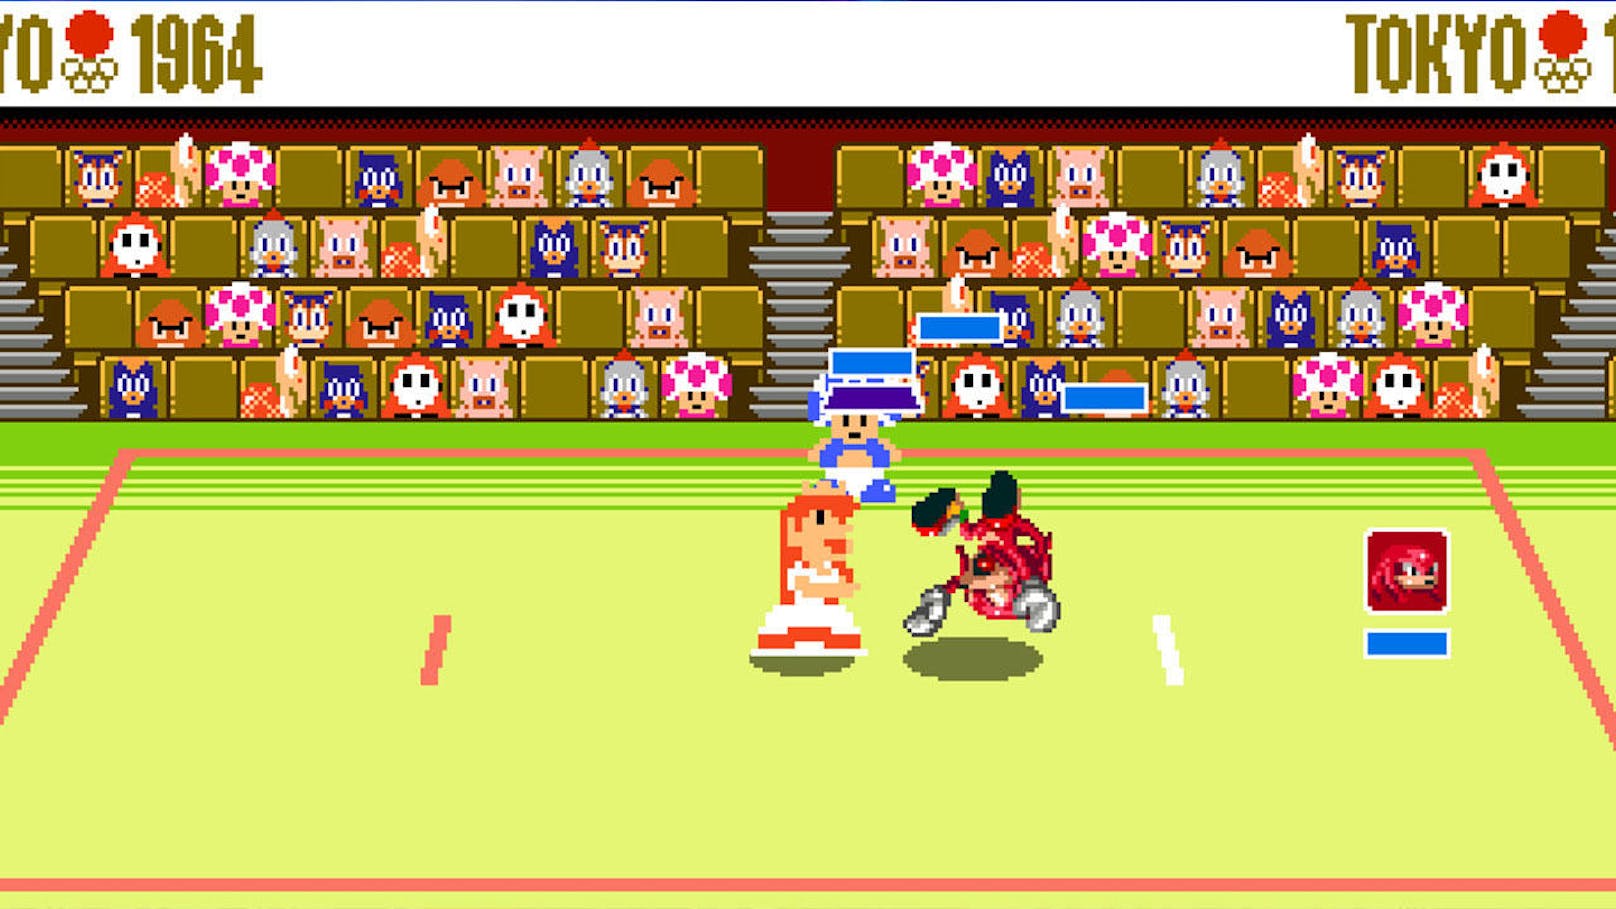 Die Handlung ist wieder vernachlässigbar - eine magische Spielkonsole verschluckt Titelhelden und Bösewichte in eine Pixelwelt, während Luigi und Co. in der 3D-Spielwelt nach der Rettung suchen. Beide Gruppen landen bei den Olympischen Spielen in Tokio, eine Gruppe im Jahr 2020, die andere 1964.